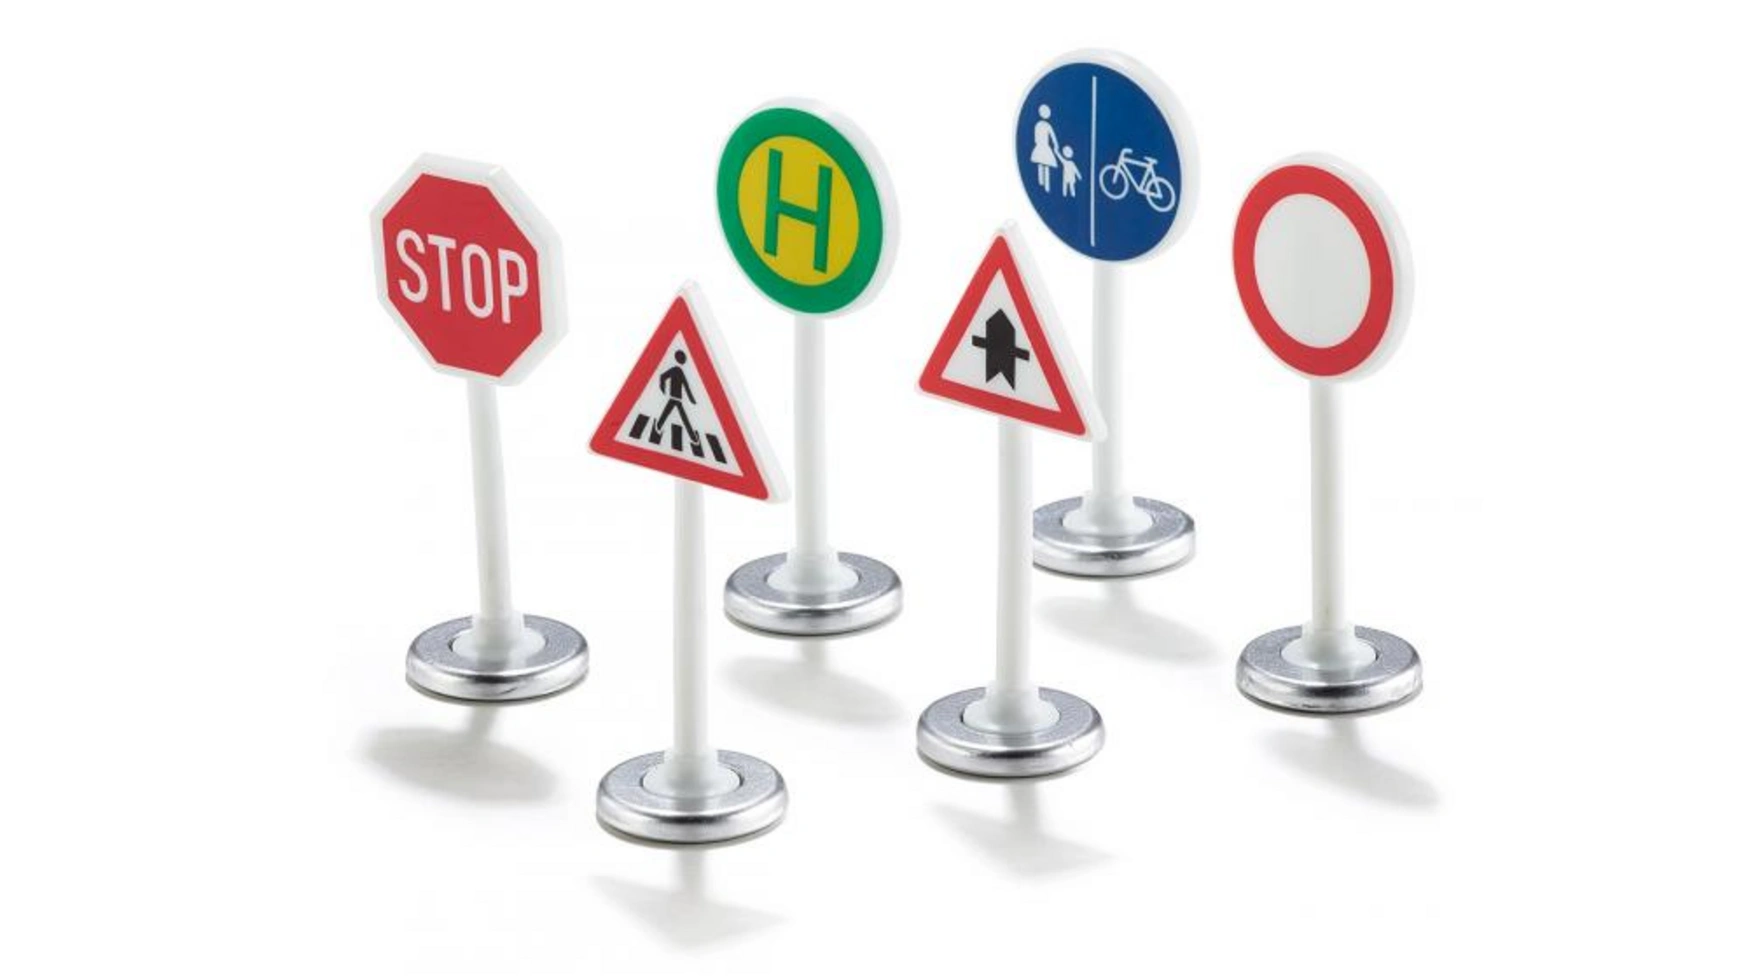 Супер дорожный знак Siku мини дорожные знаки модели дорожных блоков модели дорожных сигналов заборы парковочные детские безопасные обучающие игрушки